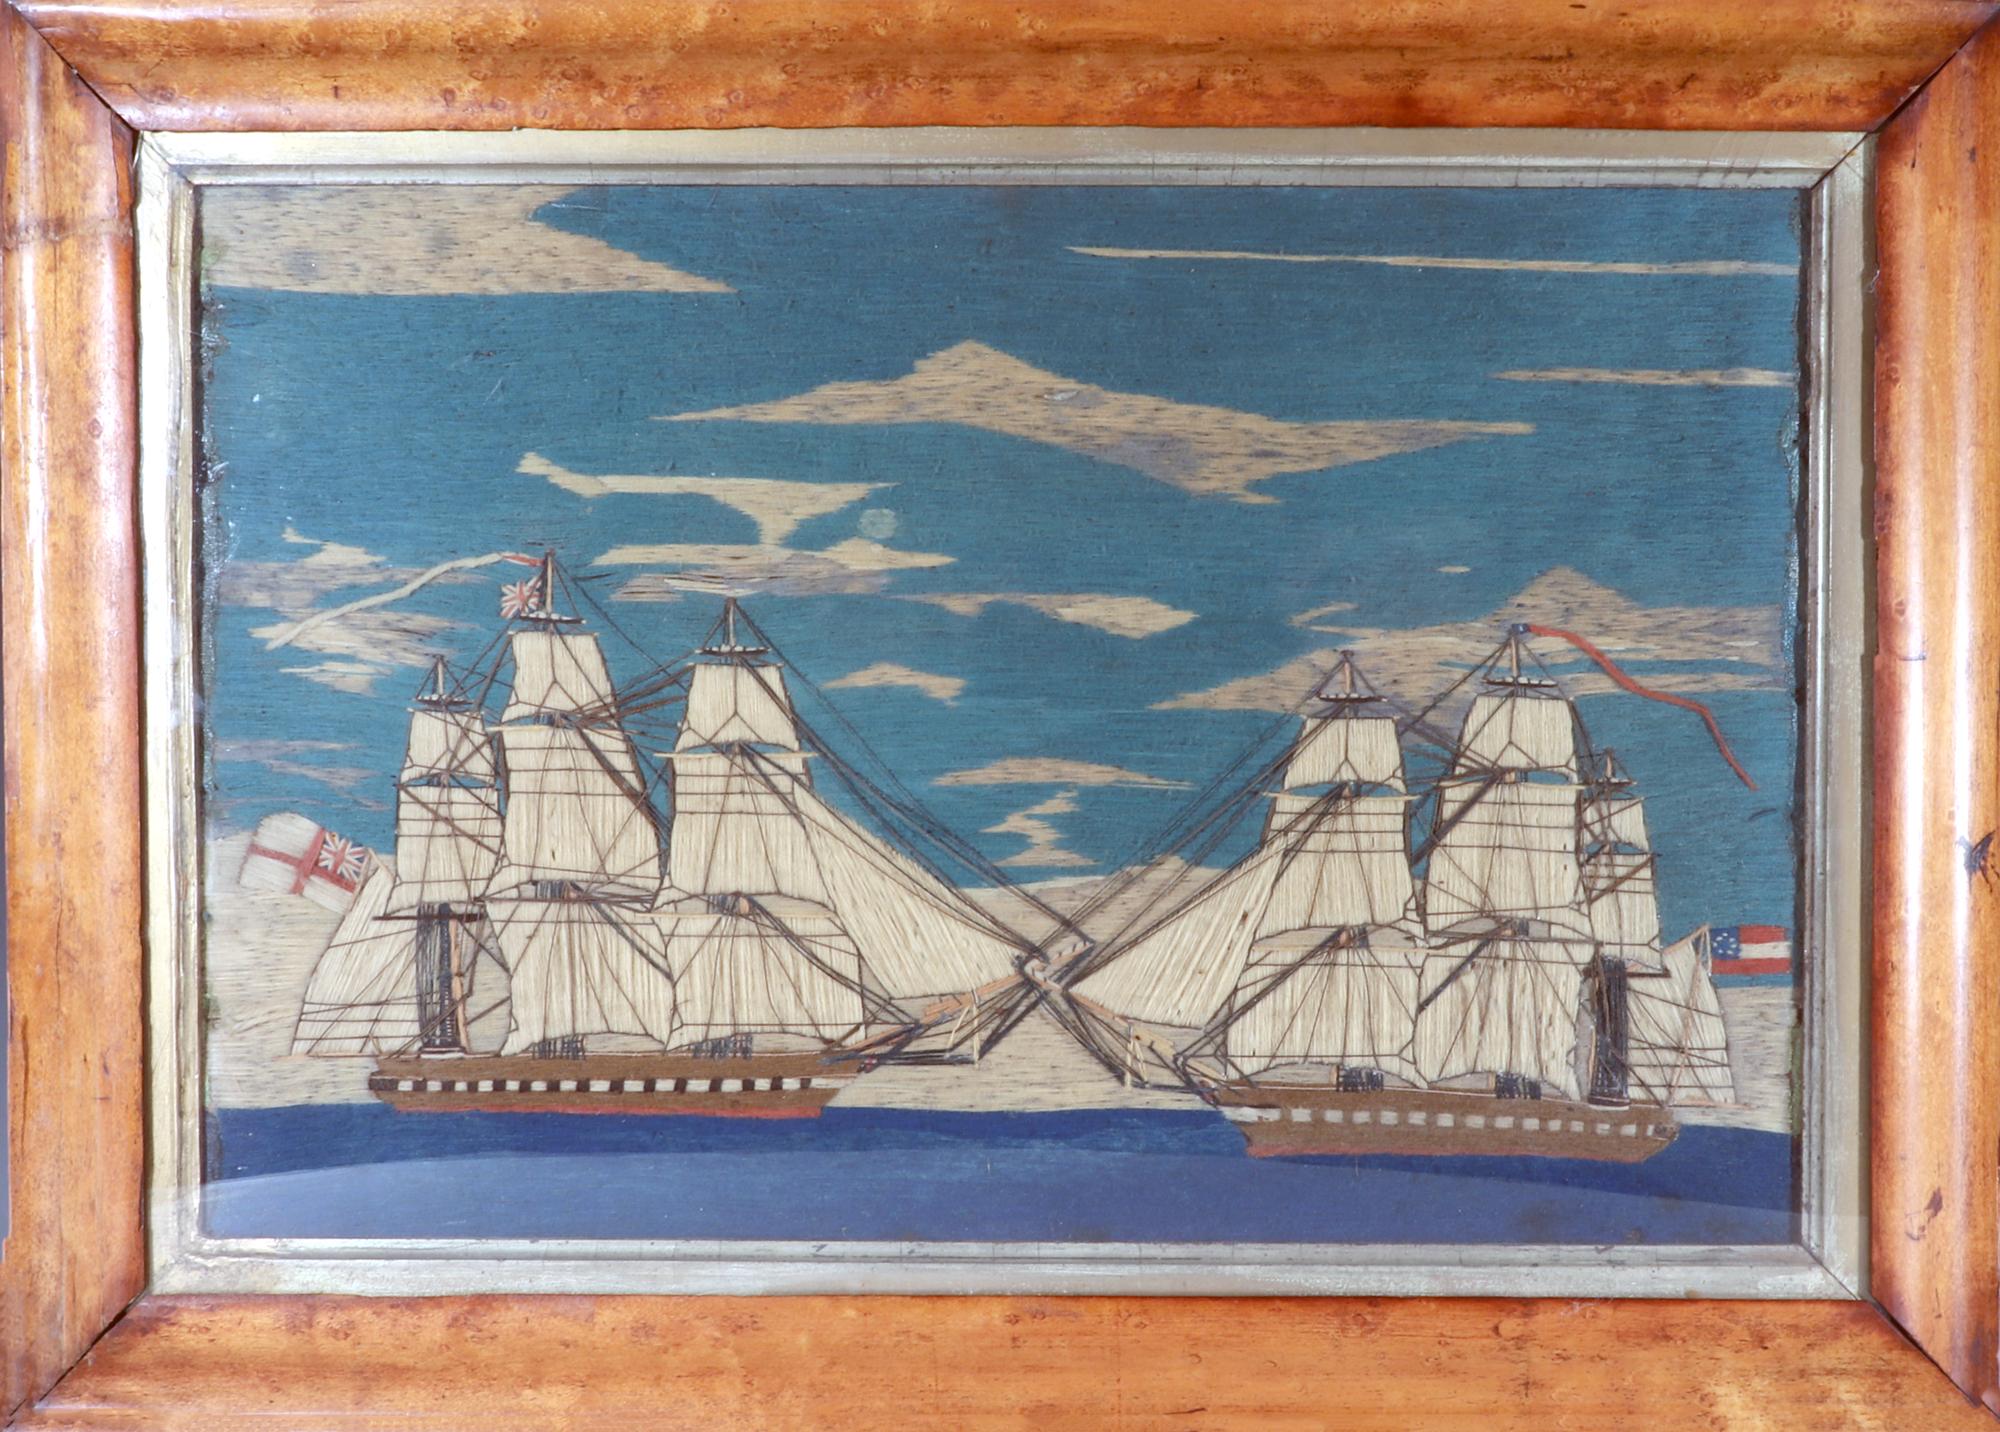 Sailor's Woolwork of A Confederate & British Ship Passing on the High Seas,
CIRCA 1861

Das kleine britische Seemannsgarn stellt zwei Schiffe unter vollen Segeln dar, die auf hoher See vorbeifahren. Auf dem einen Schiff wehen die White Ensign und